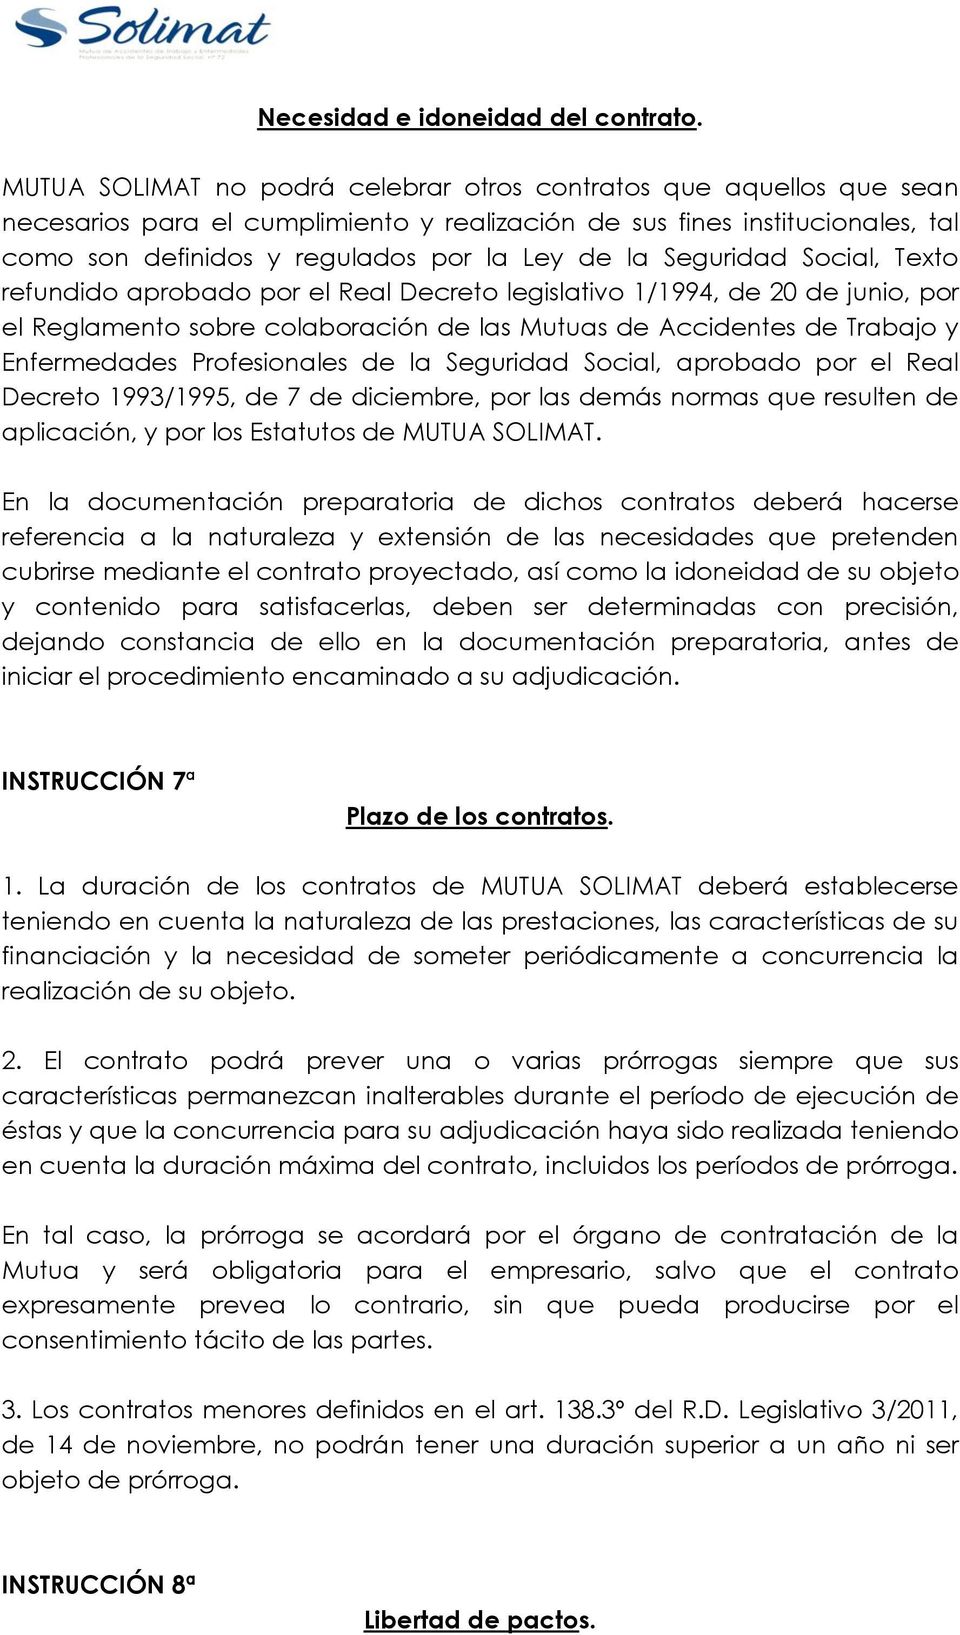 Seguridad Social, Texto refundido aprobado por el Real Decreto legislativo 1/1994, de 20 de junio, por el Reglamento sobre colaboración de las Mutuas de Accidentes de Trabajo y Enfermedades